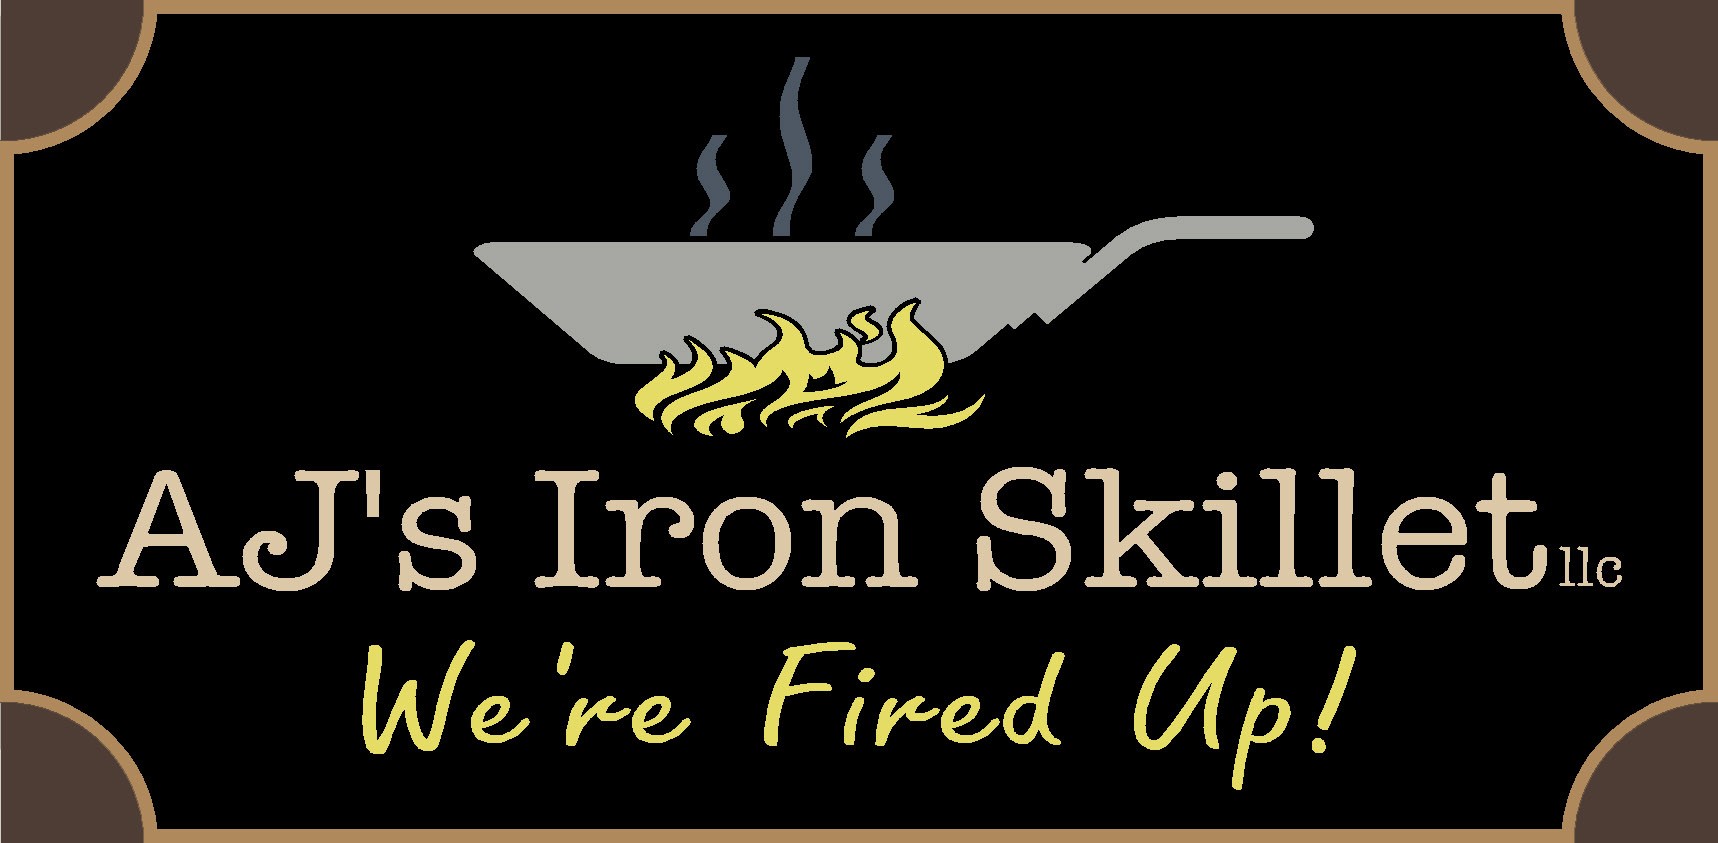 AJ's Iron Skillet LLC 31 W Front St N